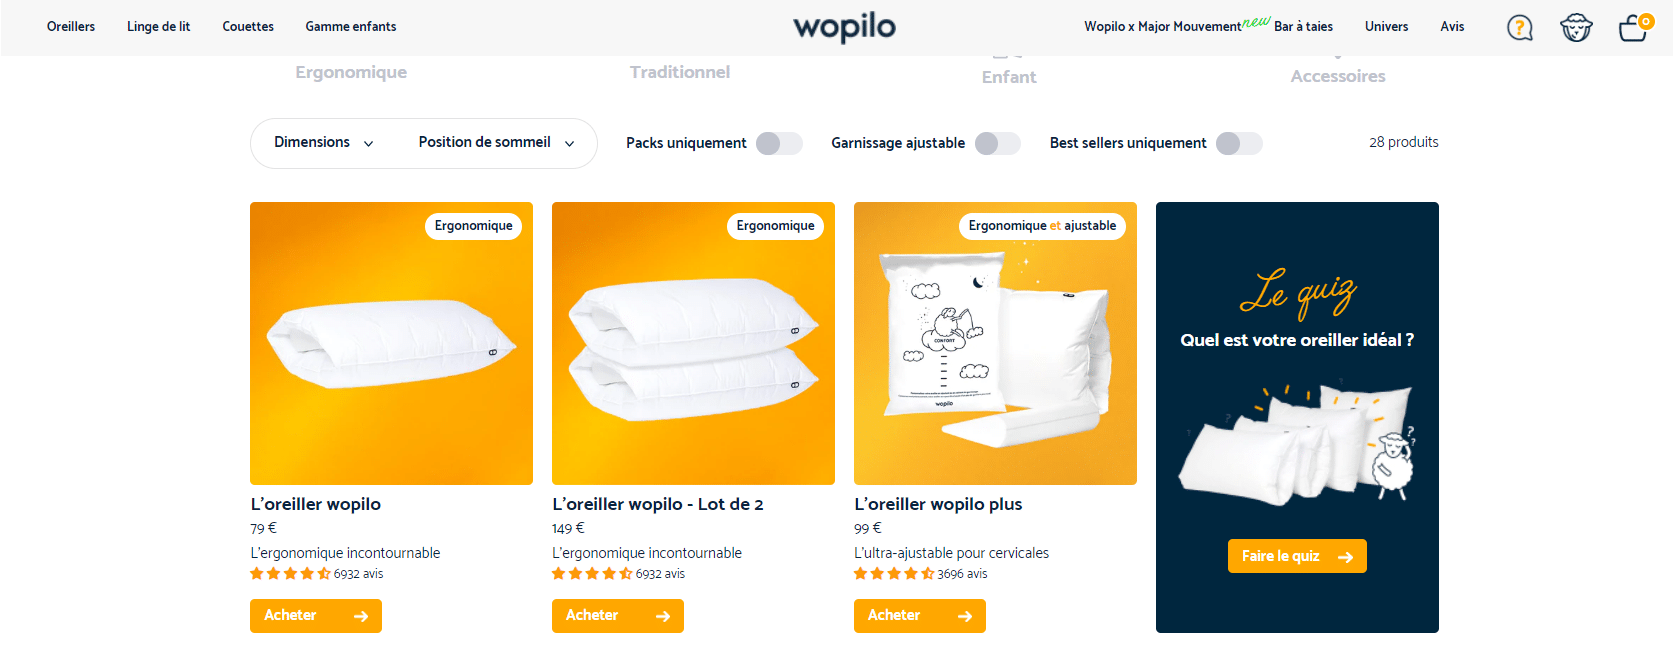 Présentation De Wopilo, Une Marque D’oreillers De Qualité